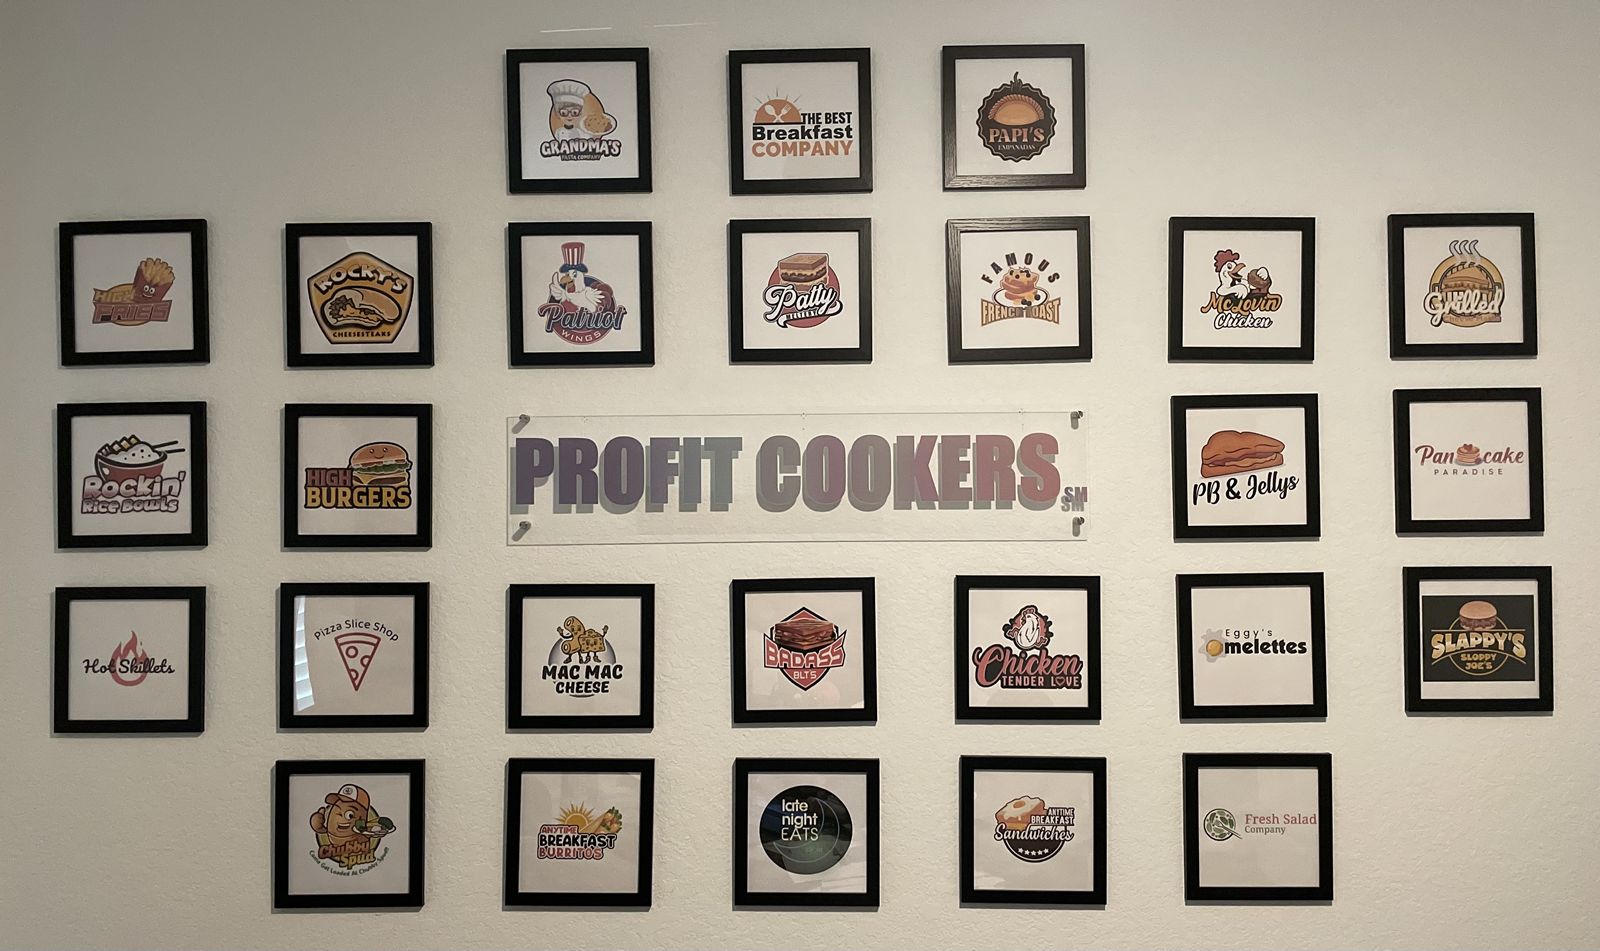 Profit Cookers Guarantees 30% Profit to Restaurants